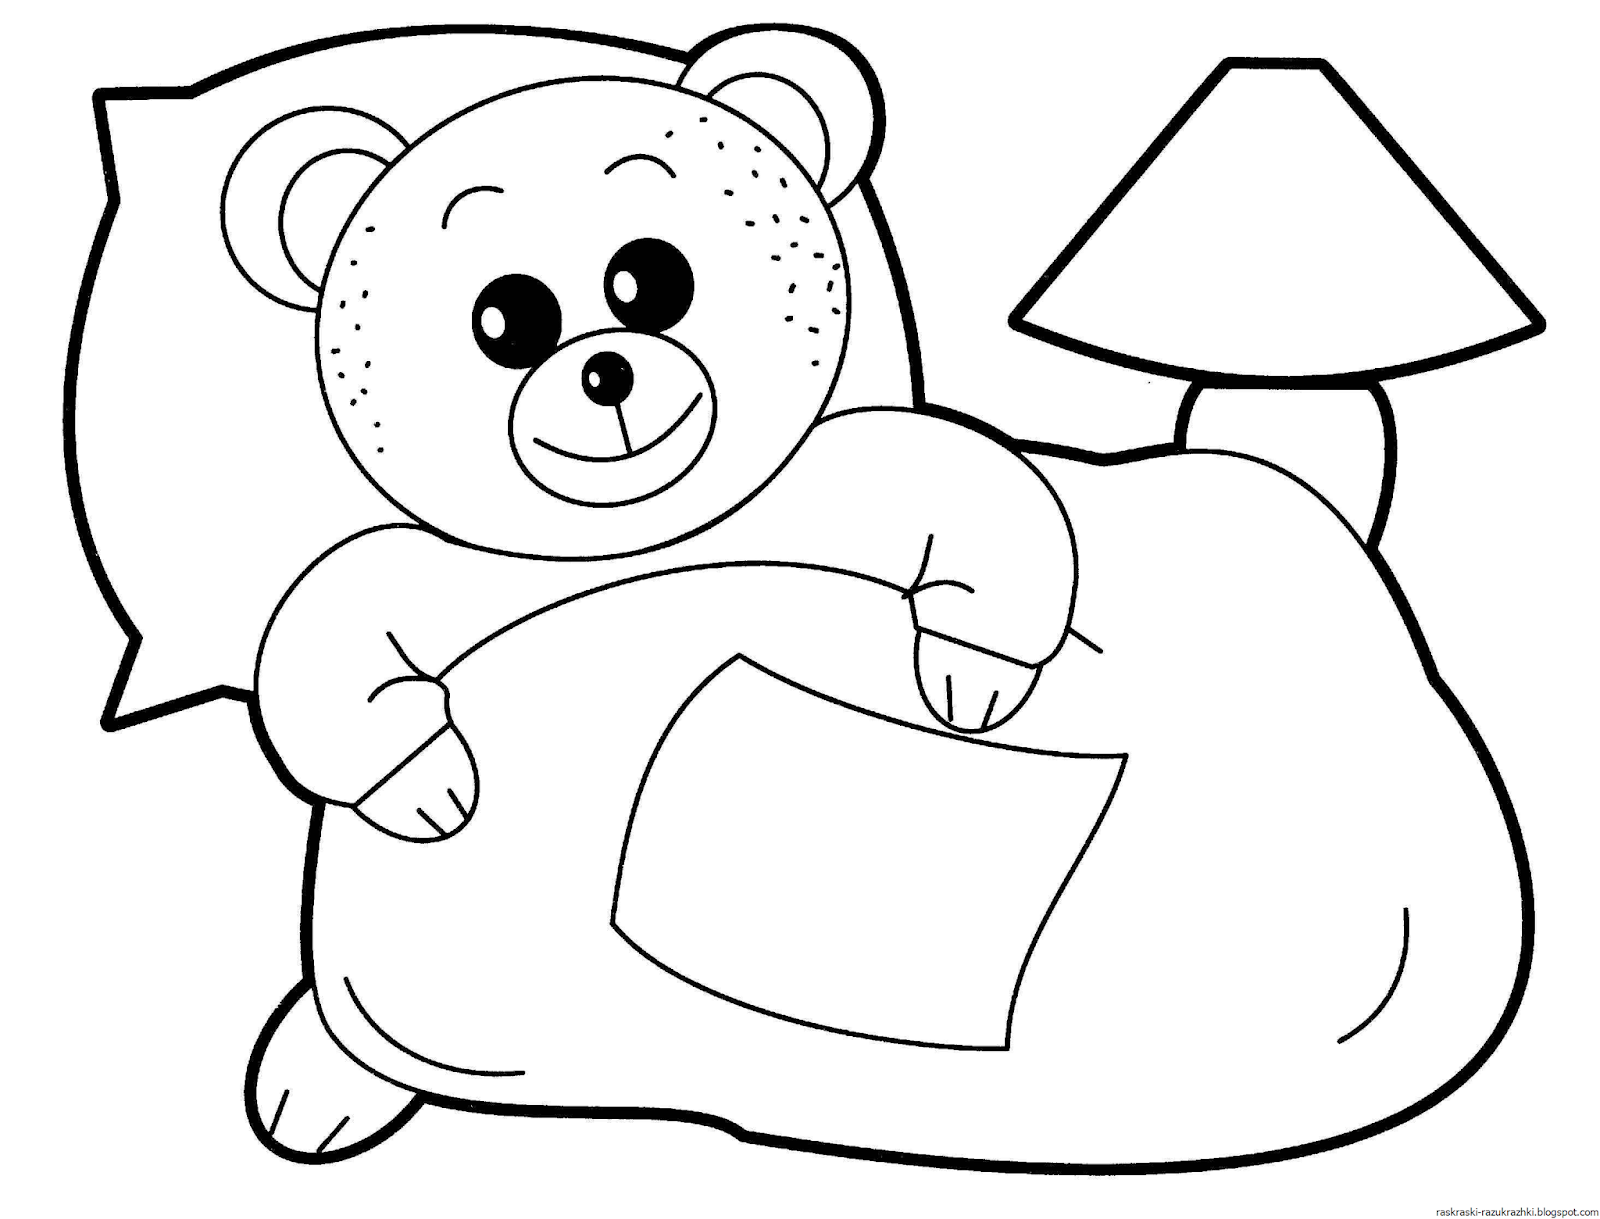 Картинки детям для раскрашивания 4 5 лет. Раскраска. Медвежонок. Раскраски для малышей. Медвежонок раскраска для детей. Раскраска "мишки".